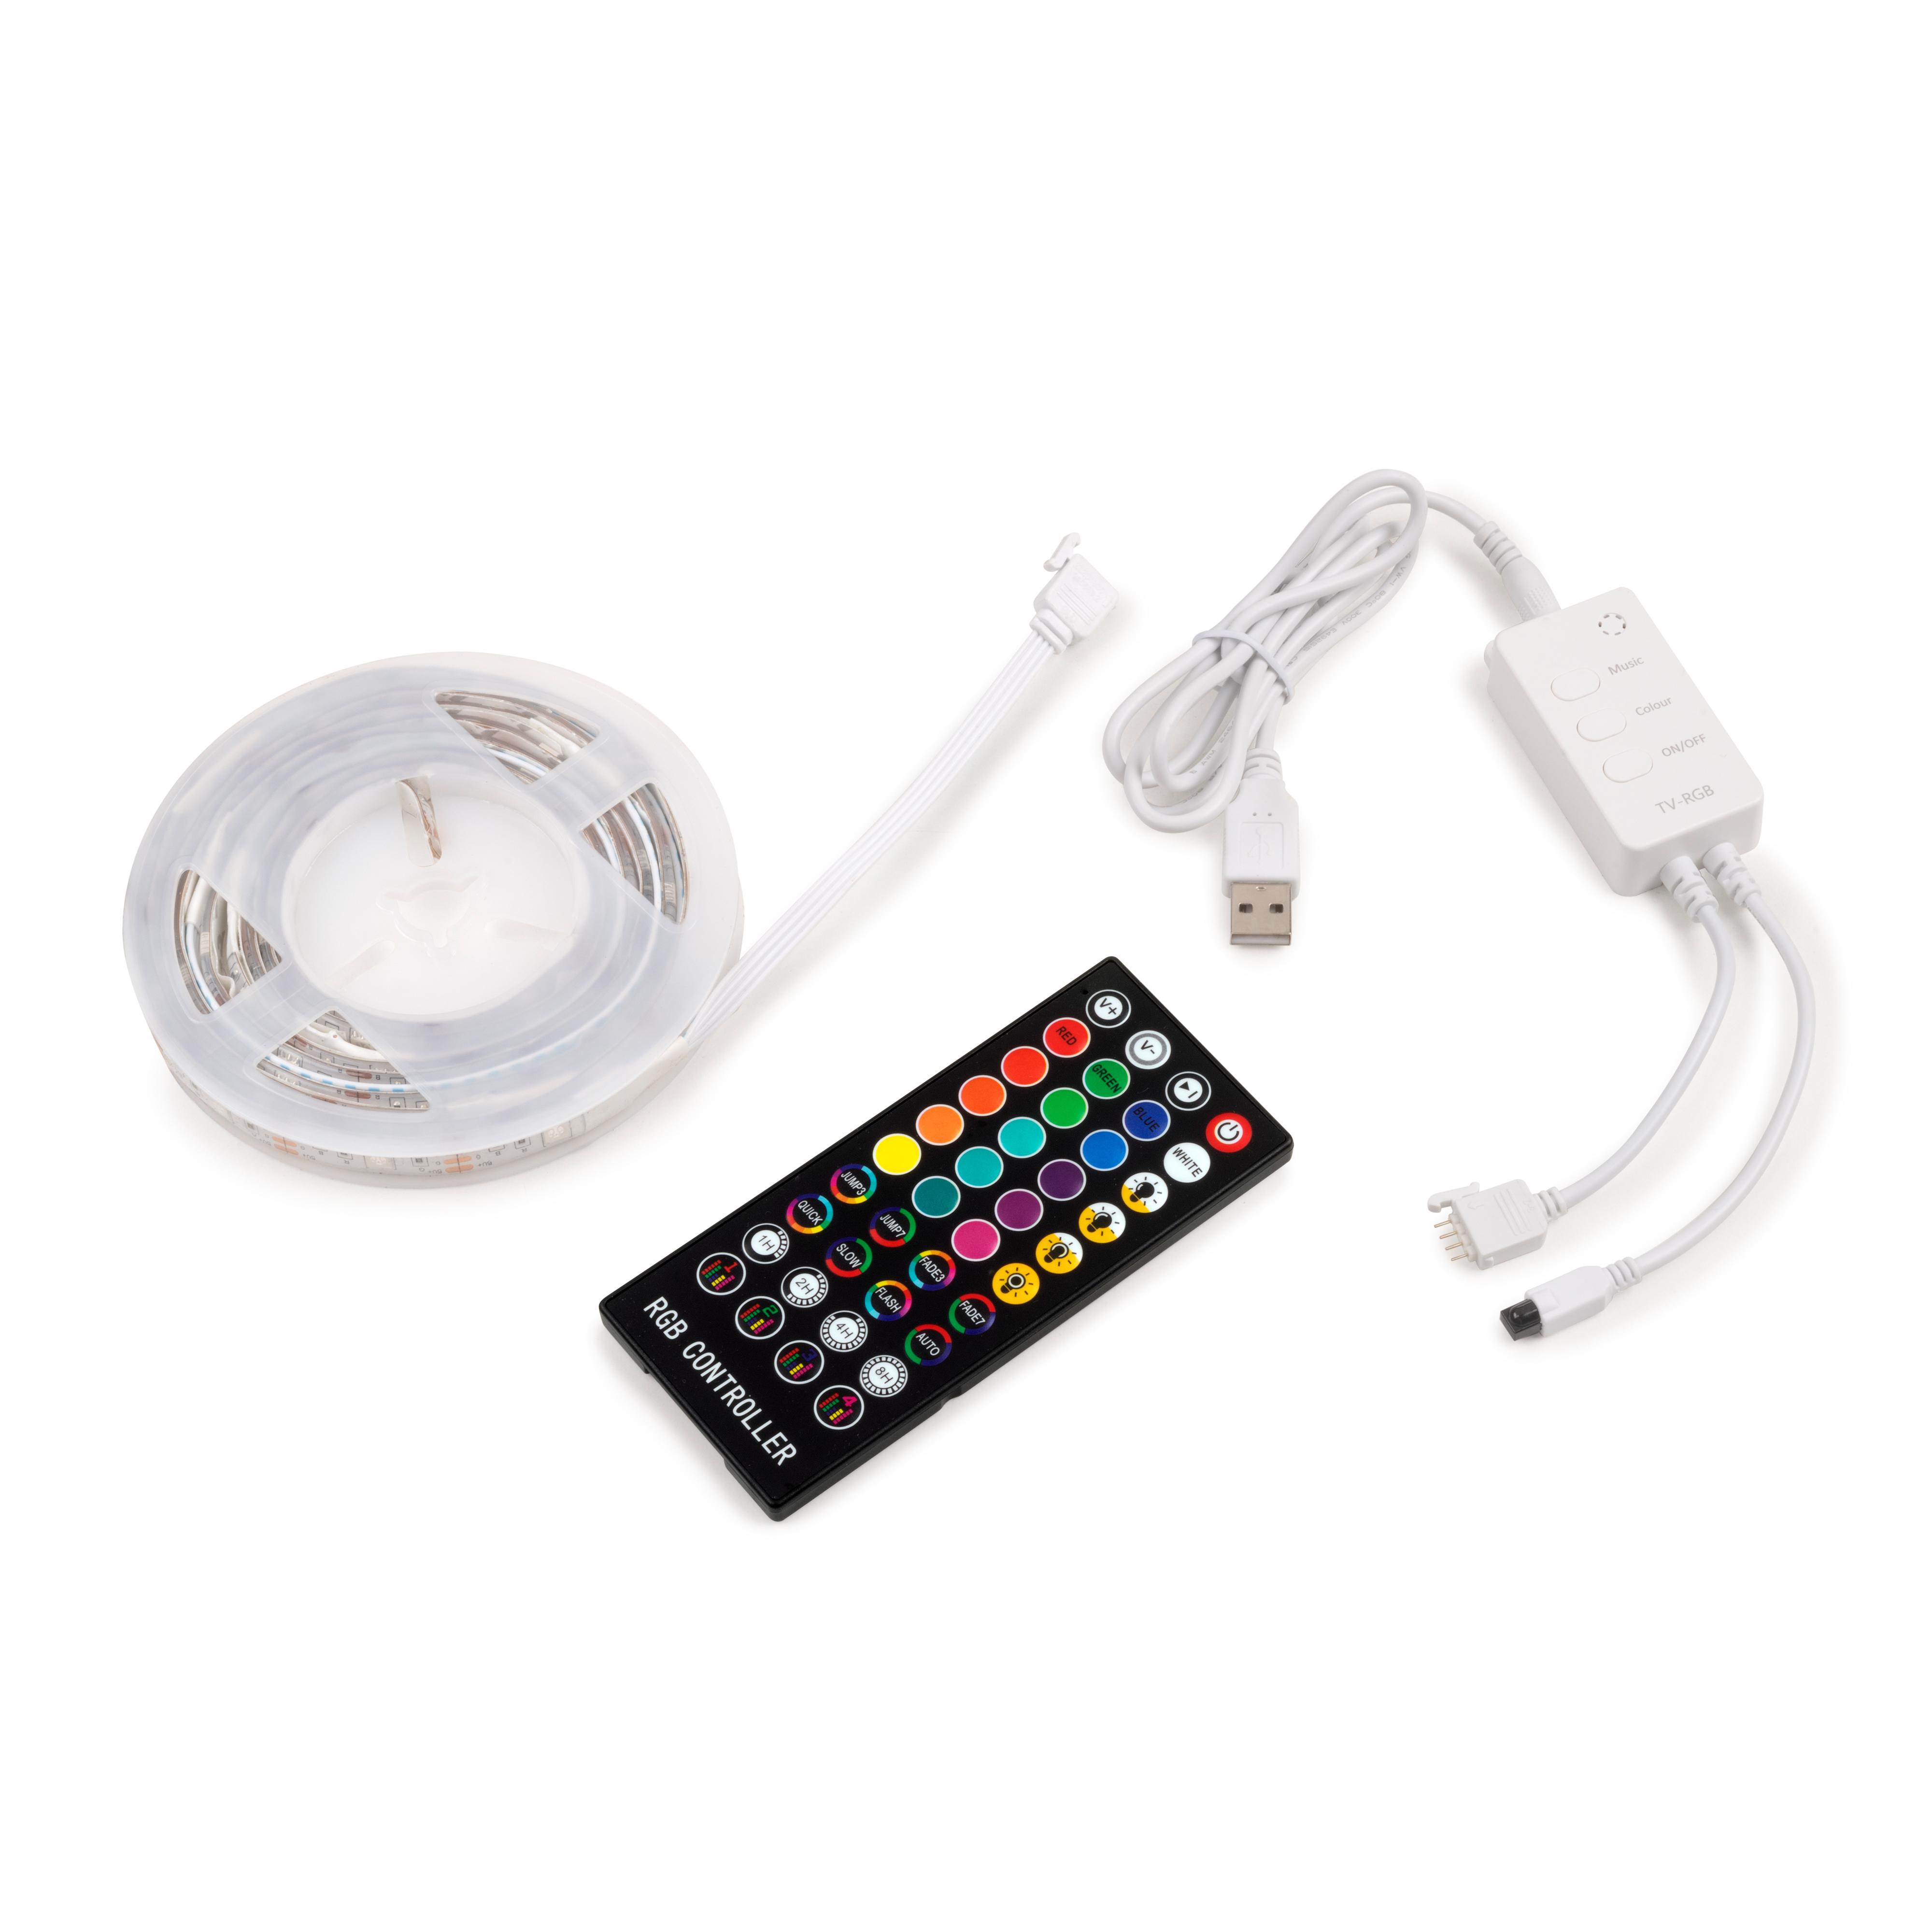 IGWT - Tira de led 5050, RGB, 2mts, con control, se conecta USB